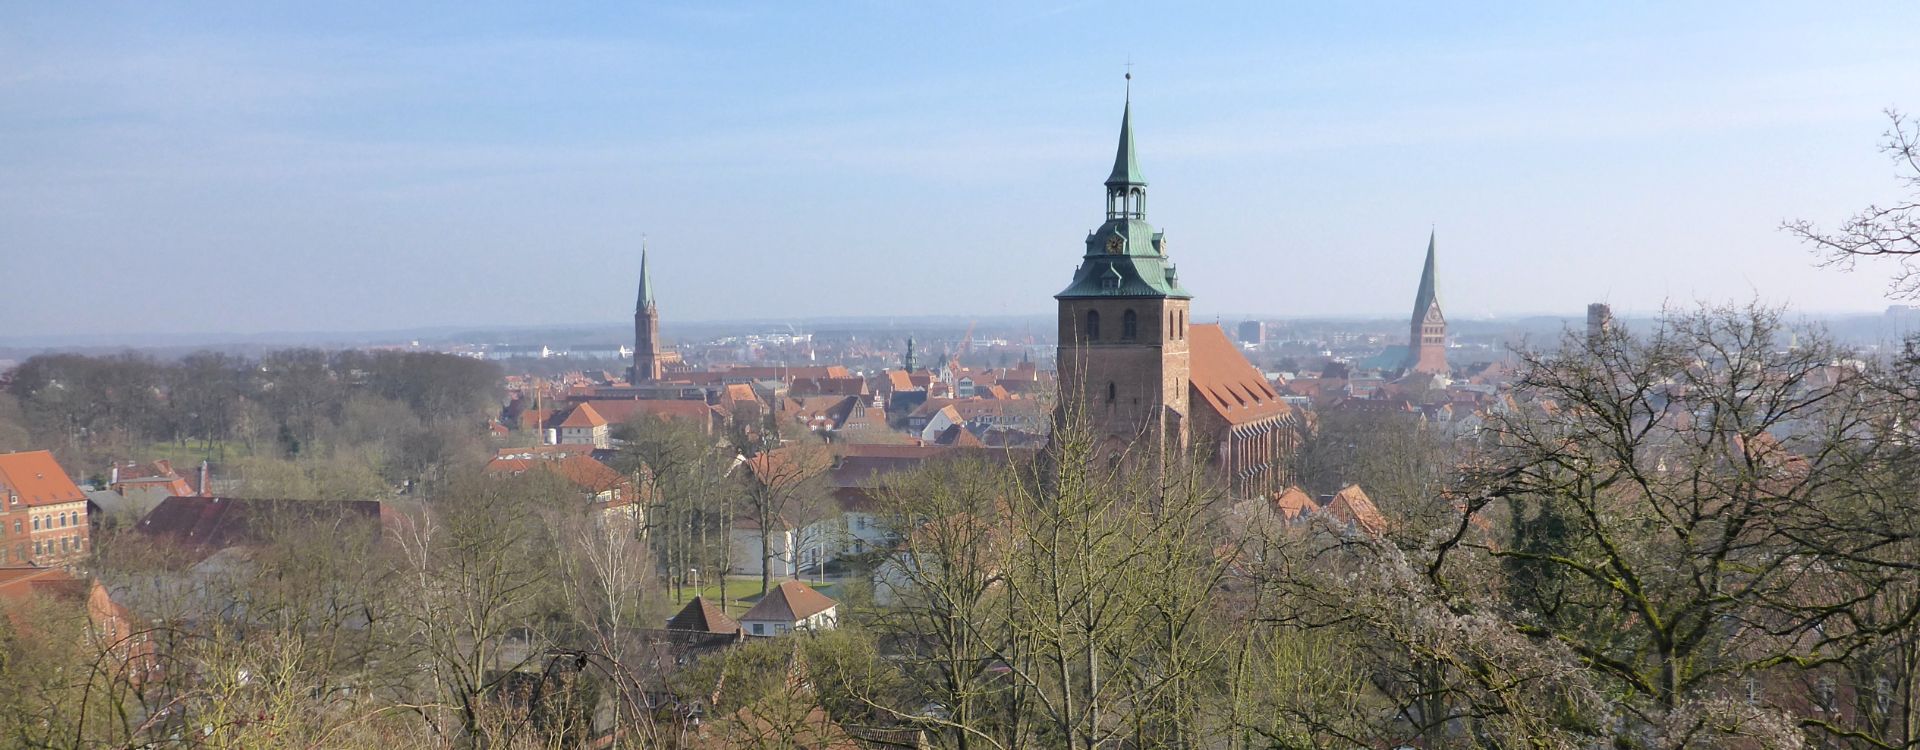 Fortschreibung des Landschaftsplans der Hansestadt Lüneburg